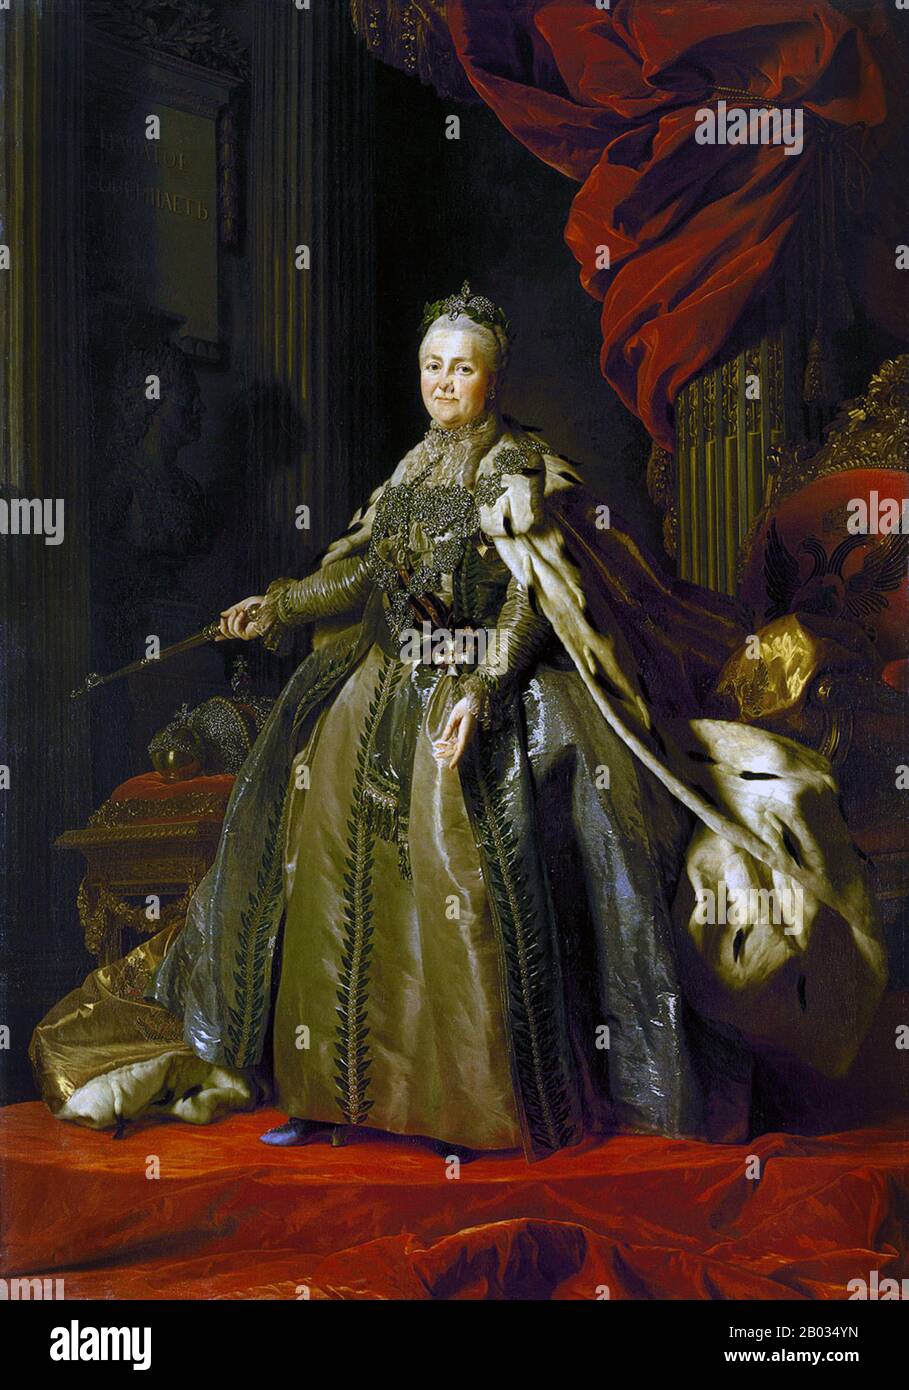 Katharina II. Von Russland (russisch: Jekaterina Aleksejewna, 2. Mai 1729 - 17. November 1796) war die renommierteste und am längsten regierende weibliche Herrscherin Russlands, die von 1762 bis zu ihrem Tod 1796 im Alter von 67 Jahren regierte. Sie wurde in Stettin, Pomerania, als Sophie Friederike Auguste von Anhalt-Zerbst-Dornburg geboren und kam nach einem Staatsstreich an die Macht, als ihr Mann, Peter III., ermordet wurde. Russland wurde unter ihrer Herrschaft revitalisiert, wurde größer und stärker denn je und wurde als eine der großen Mächte Europas anerkannt. Stockfoto